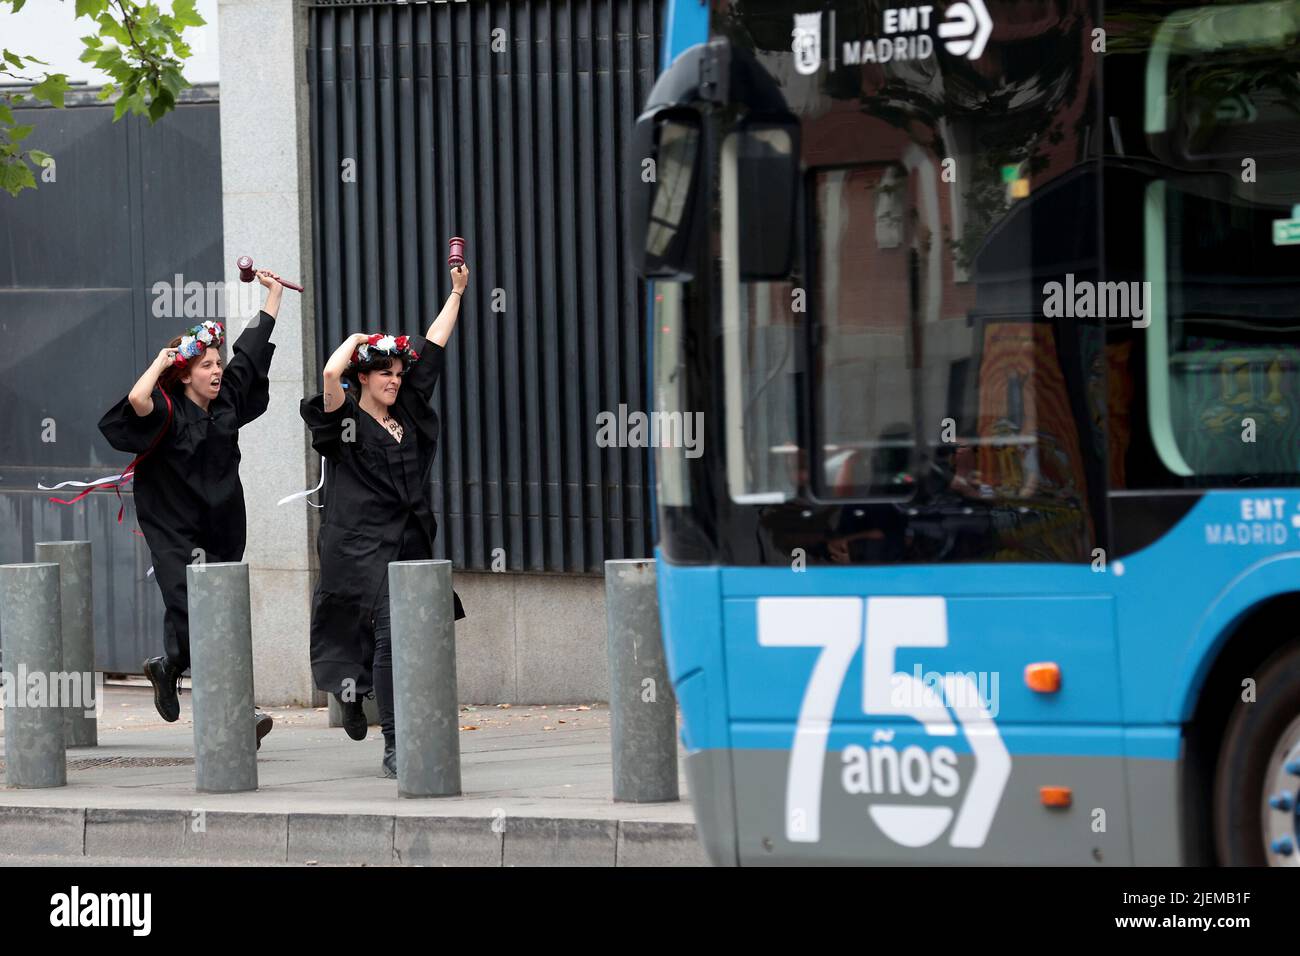 Madrid, SPAI; 27.06.2022.- des militants de Femen España protestent devant l'ambassade des États-Unis d'Amérique à Madrid en faveur de l'avortement et contre la décision prise par la Cour suprême avec les voix de juges conservateurs qu'il n'y a pas de droit constitutionnel à l'avortement, l'autoriser ou non. fin des états de grossesse. Photo: Juan Carlos Rojas Banque D'Images